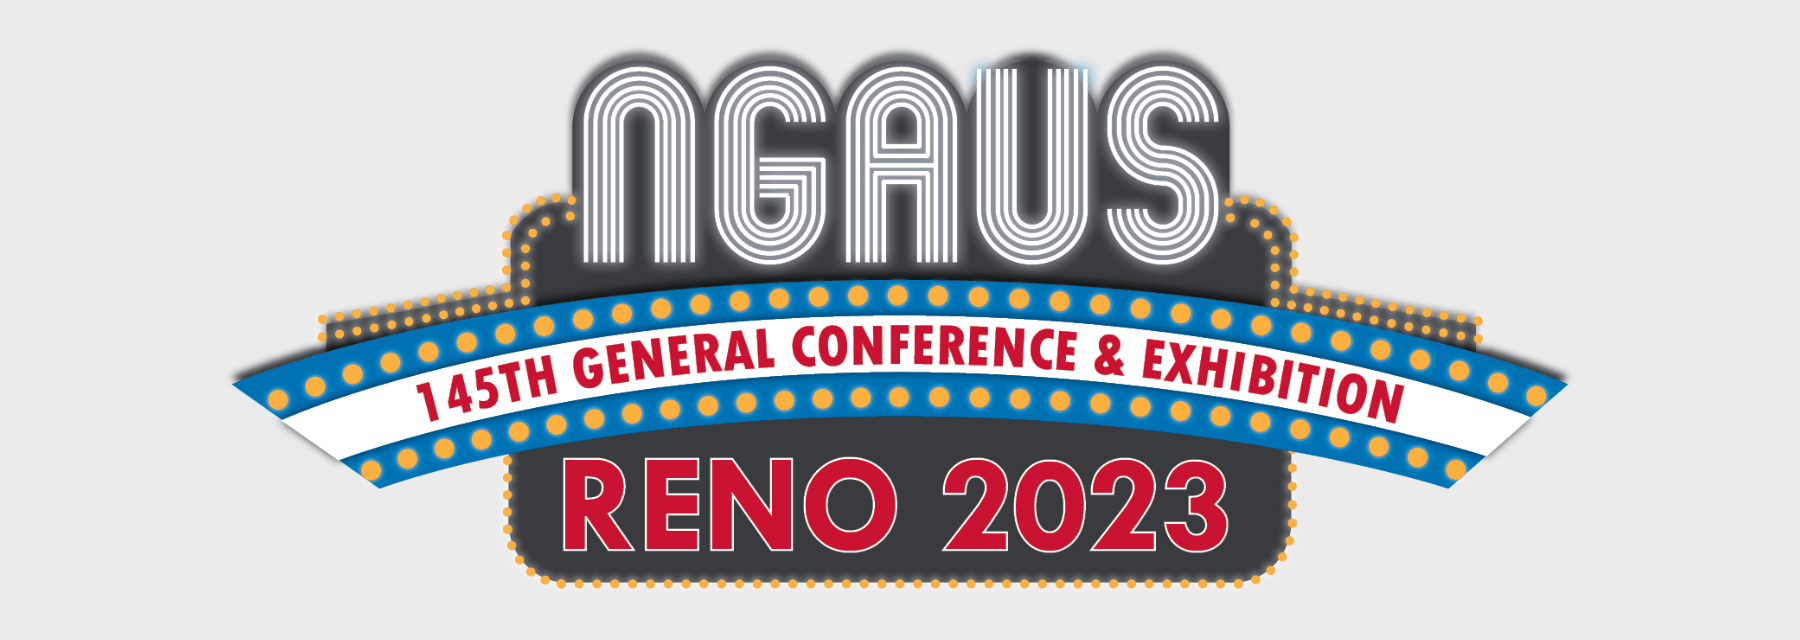 NGAUS Conference 2023 Hero Slide